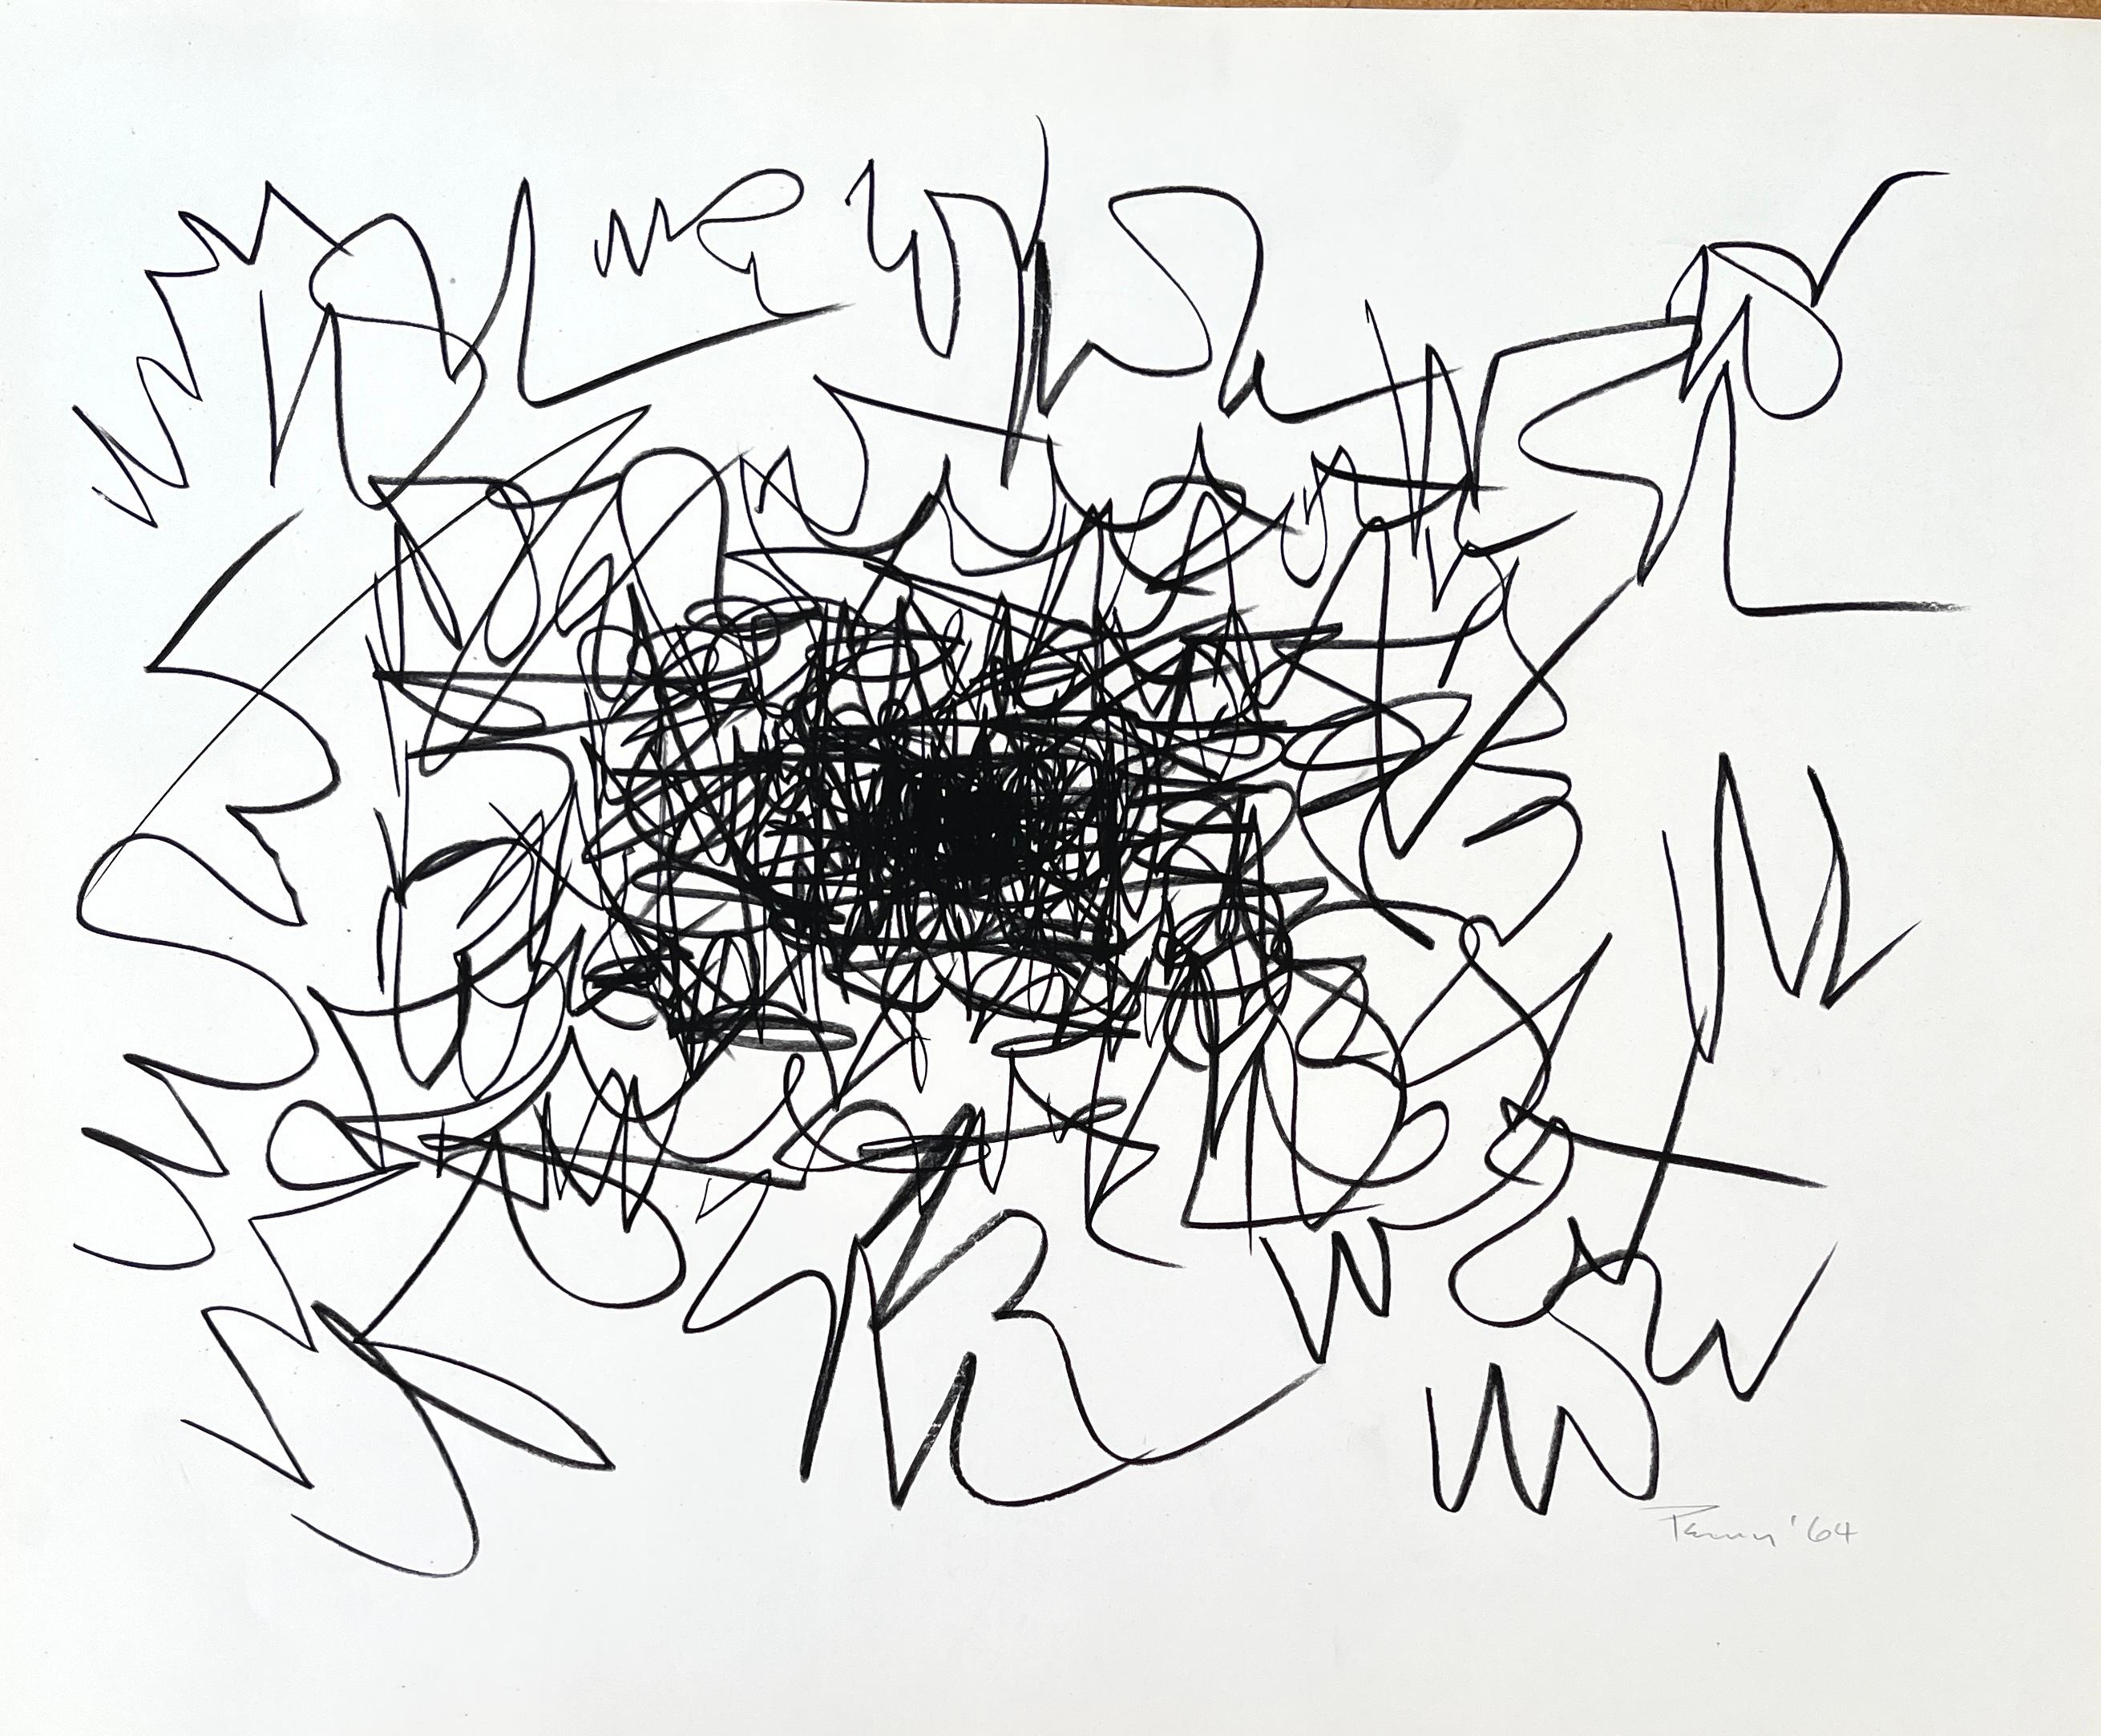 Abstrait original signé et daté par Aubrey Penny.

Aubrey Penny (Américain, 1917-2000) était un artiste abstrait californien novateur qui a travaillé sur divers supports. Propriétaire de la galerie No-os sur La Cienega Boulevard, Los Angeles, CA, de